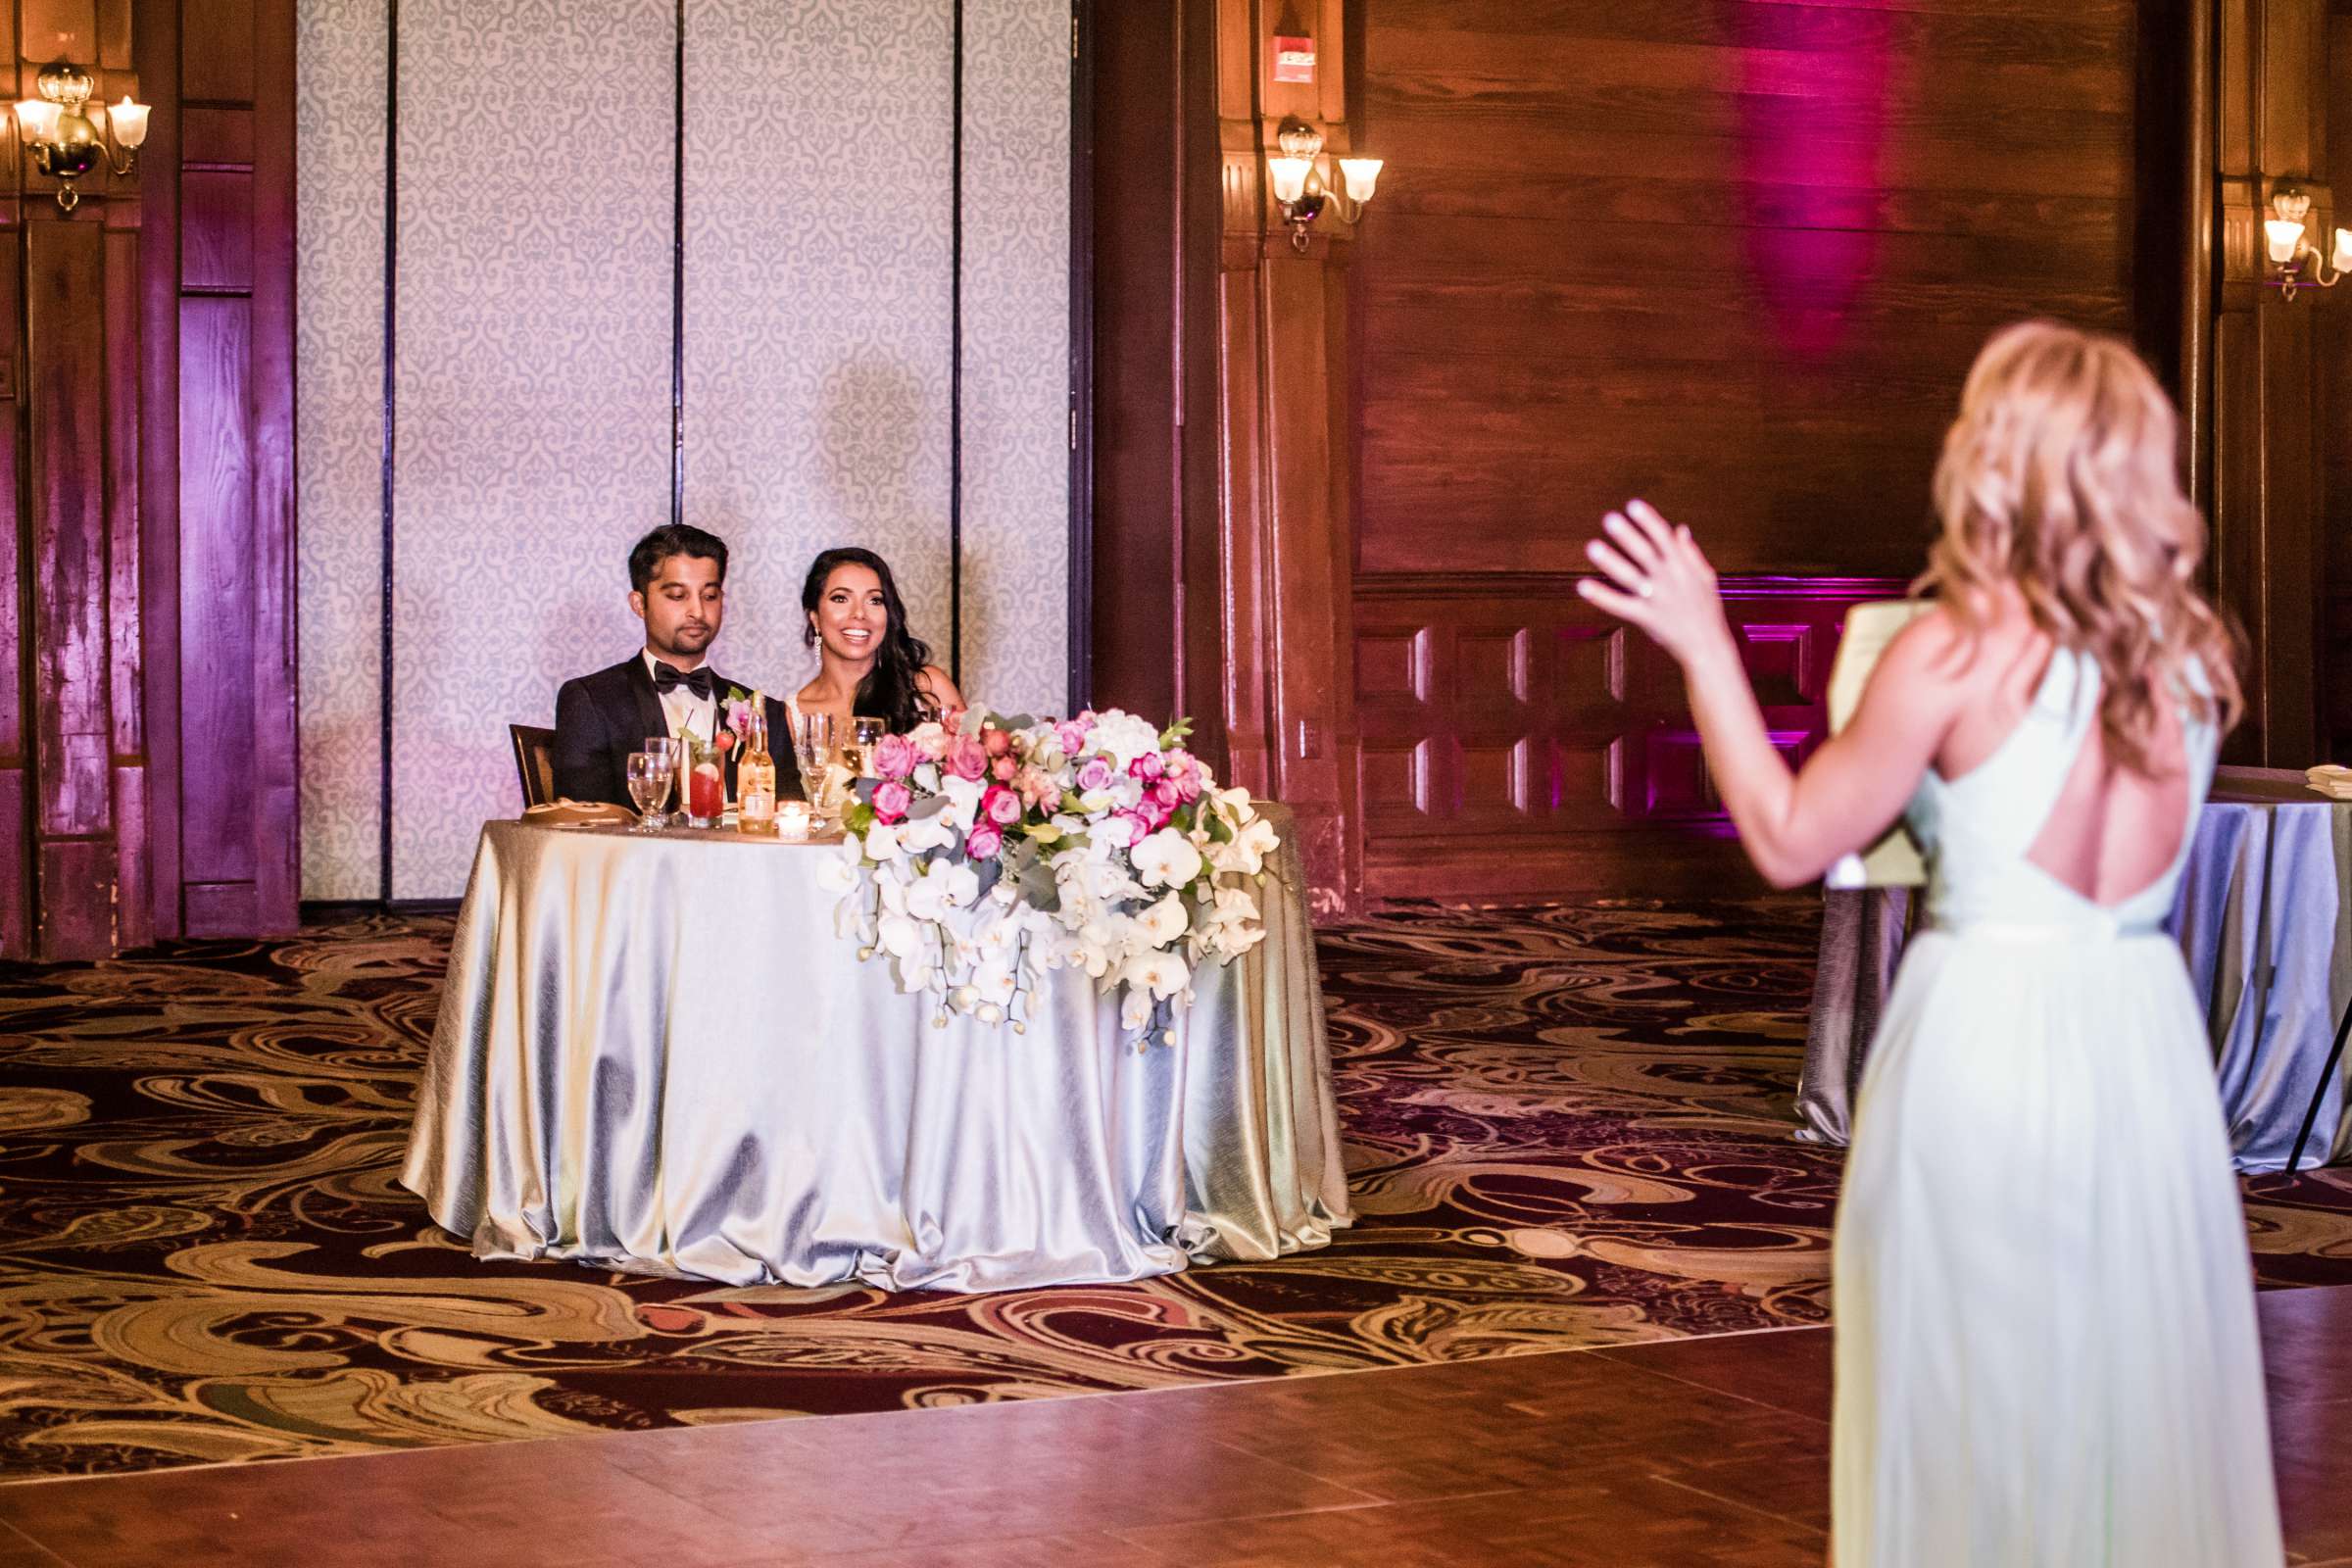 Hotel Del Coronado Wedding, Sabrina and Gehaan Wedding Photo #409163 by True Photography